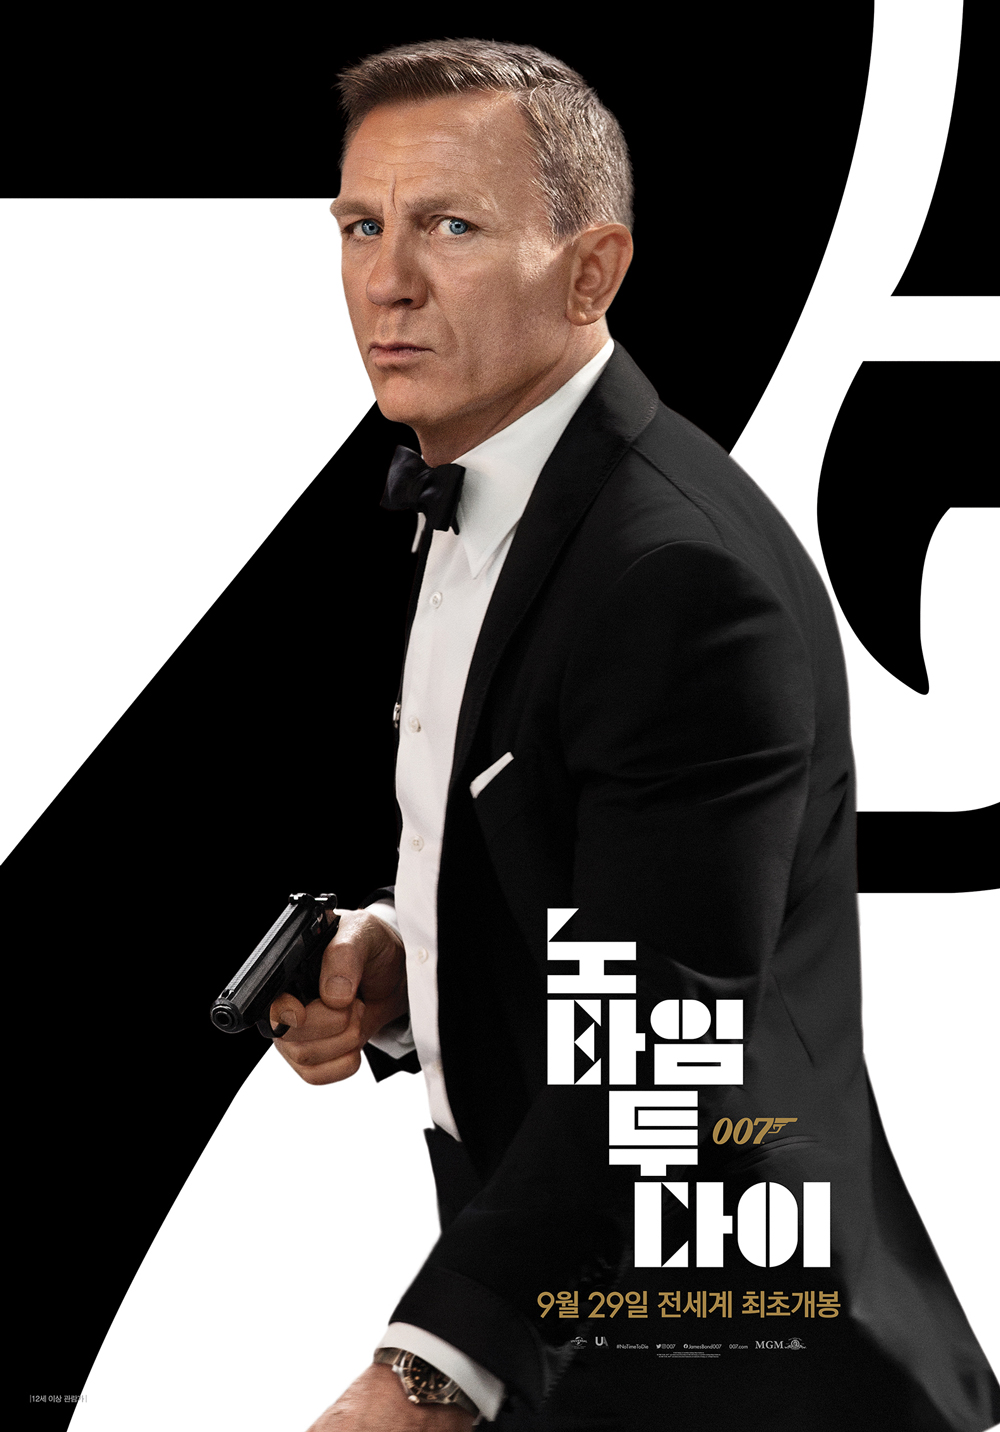 [Y리뷰] ‘007 노 타임 투 다이’ 가장 매력적인 캐릭터, 그렇지 못한 작별 인사